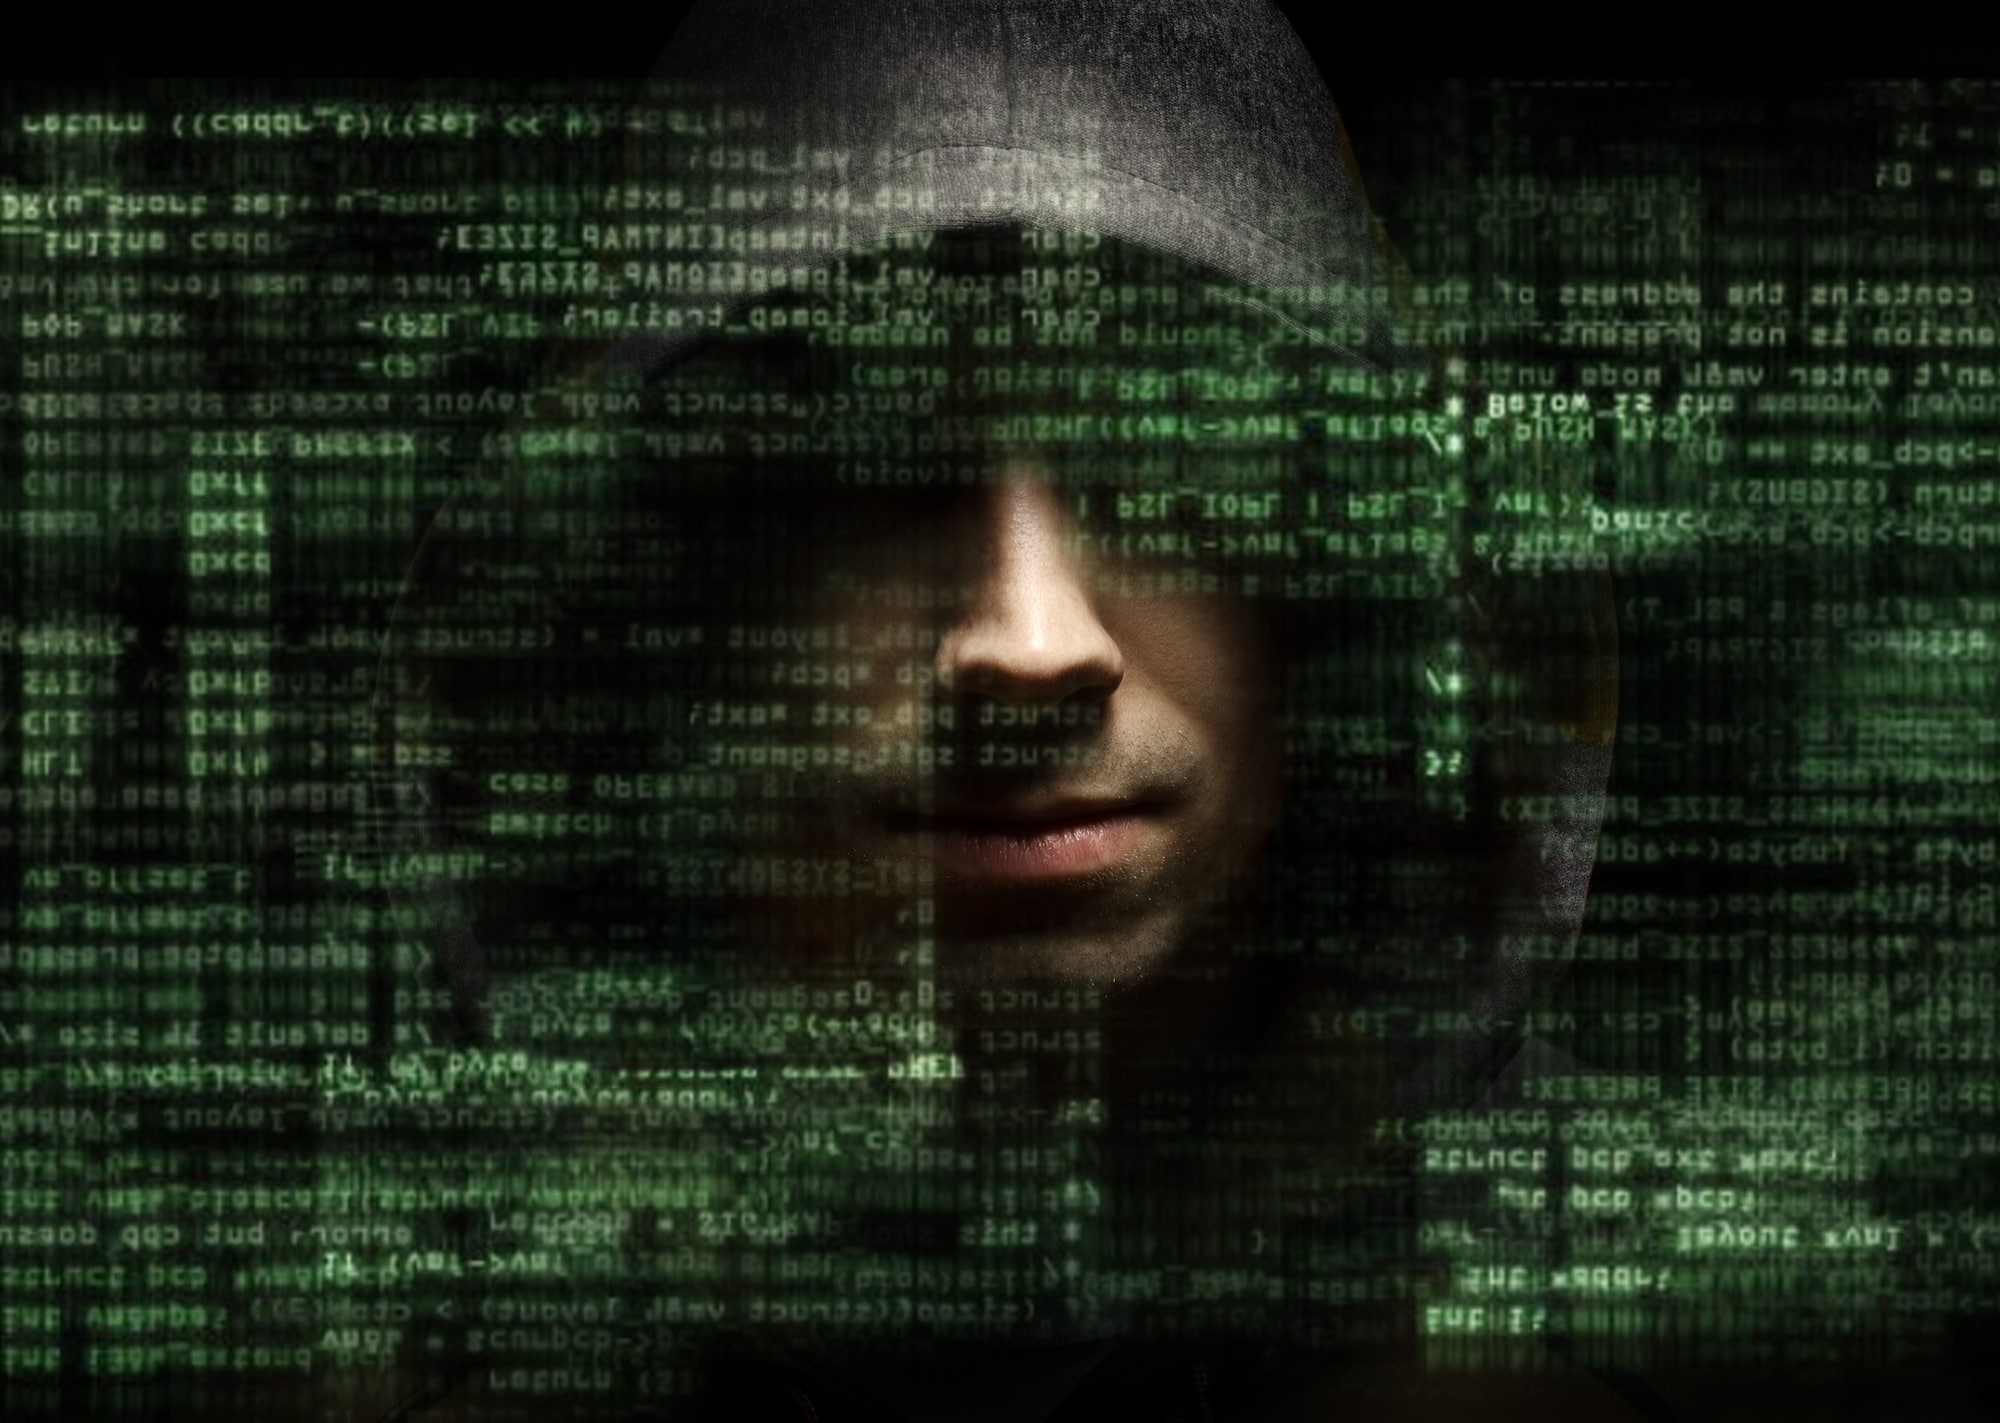 Cybersecurity: email e numeri di telefono di importanti dirigenti trovati online thumbnail